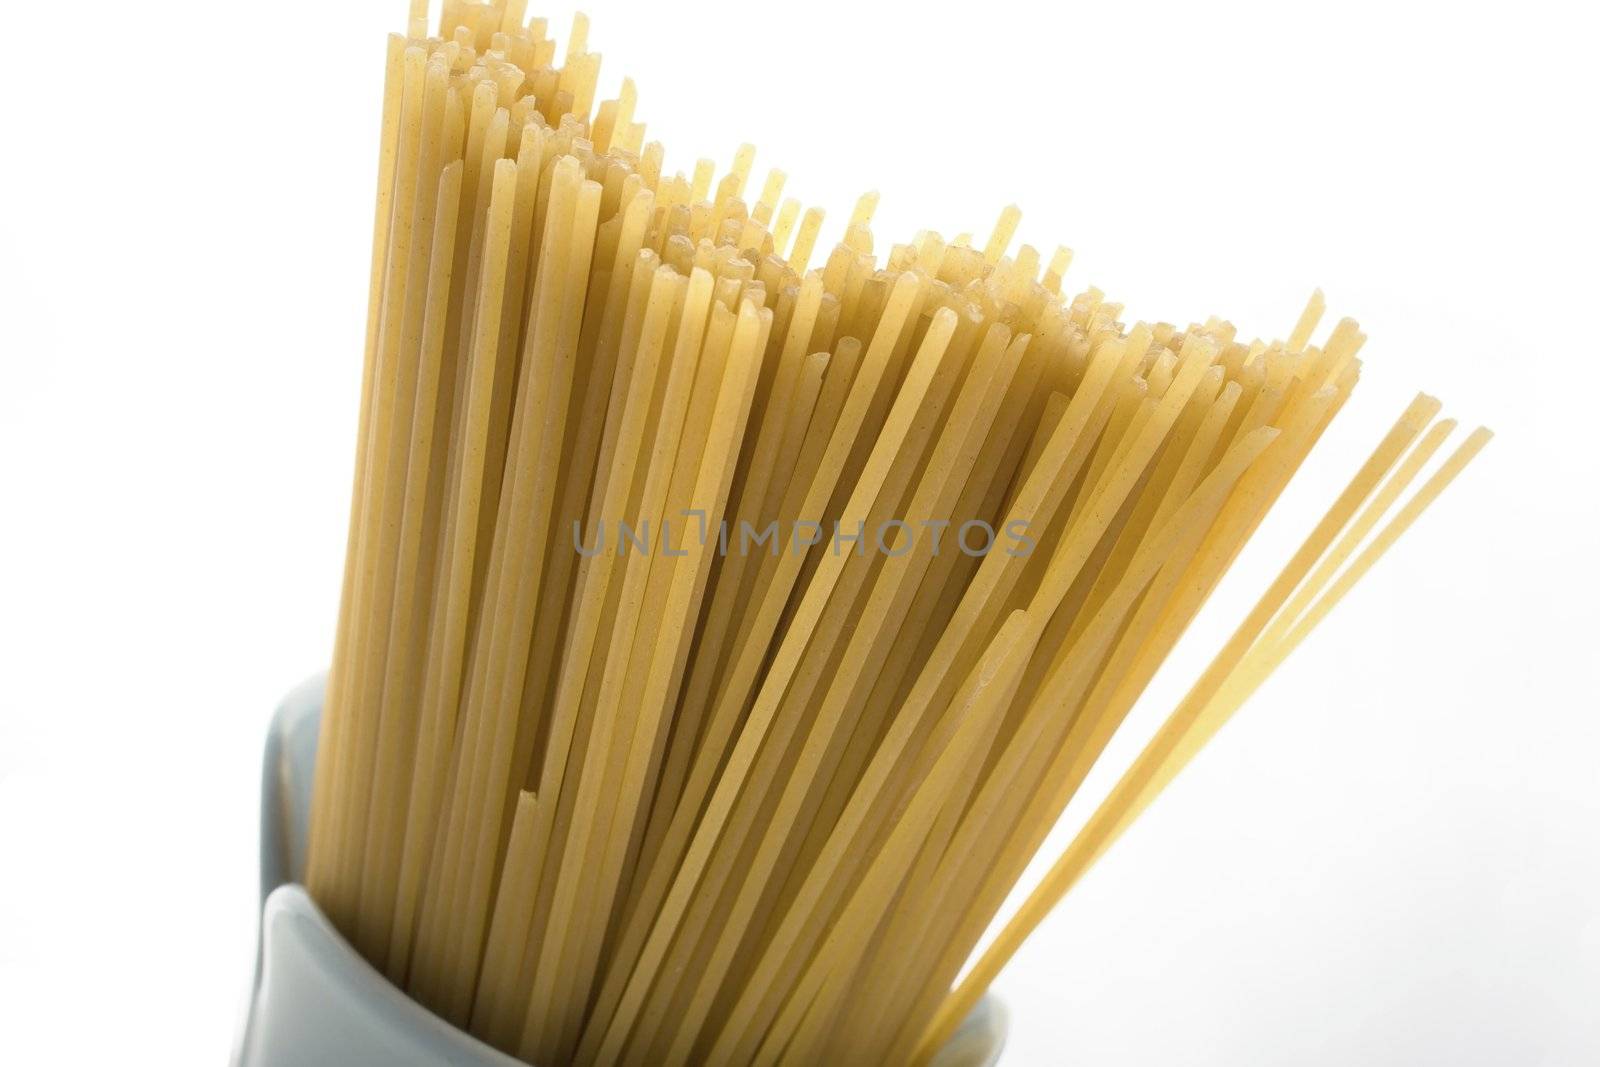 Dried Spaghetti by charlotteLake